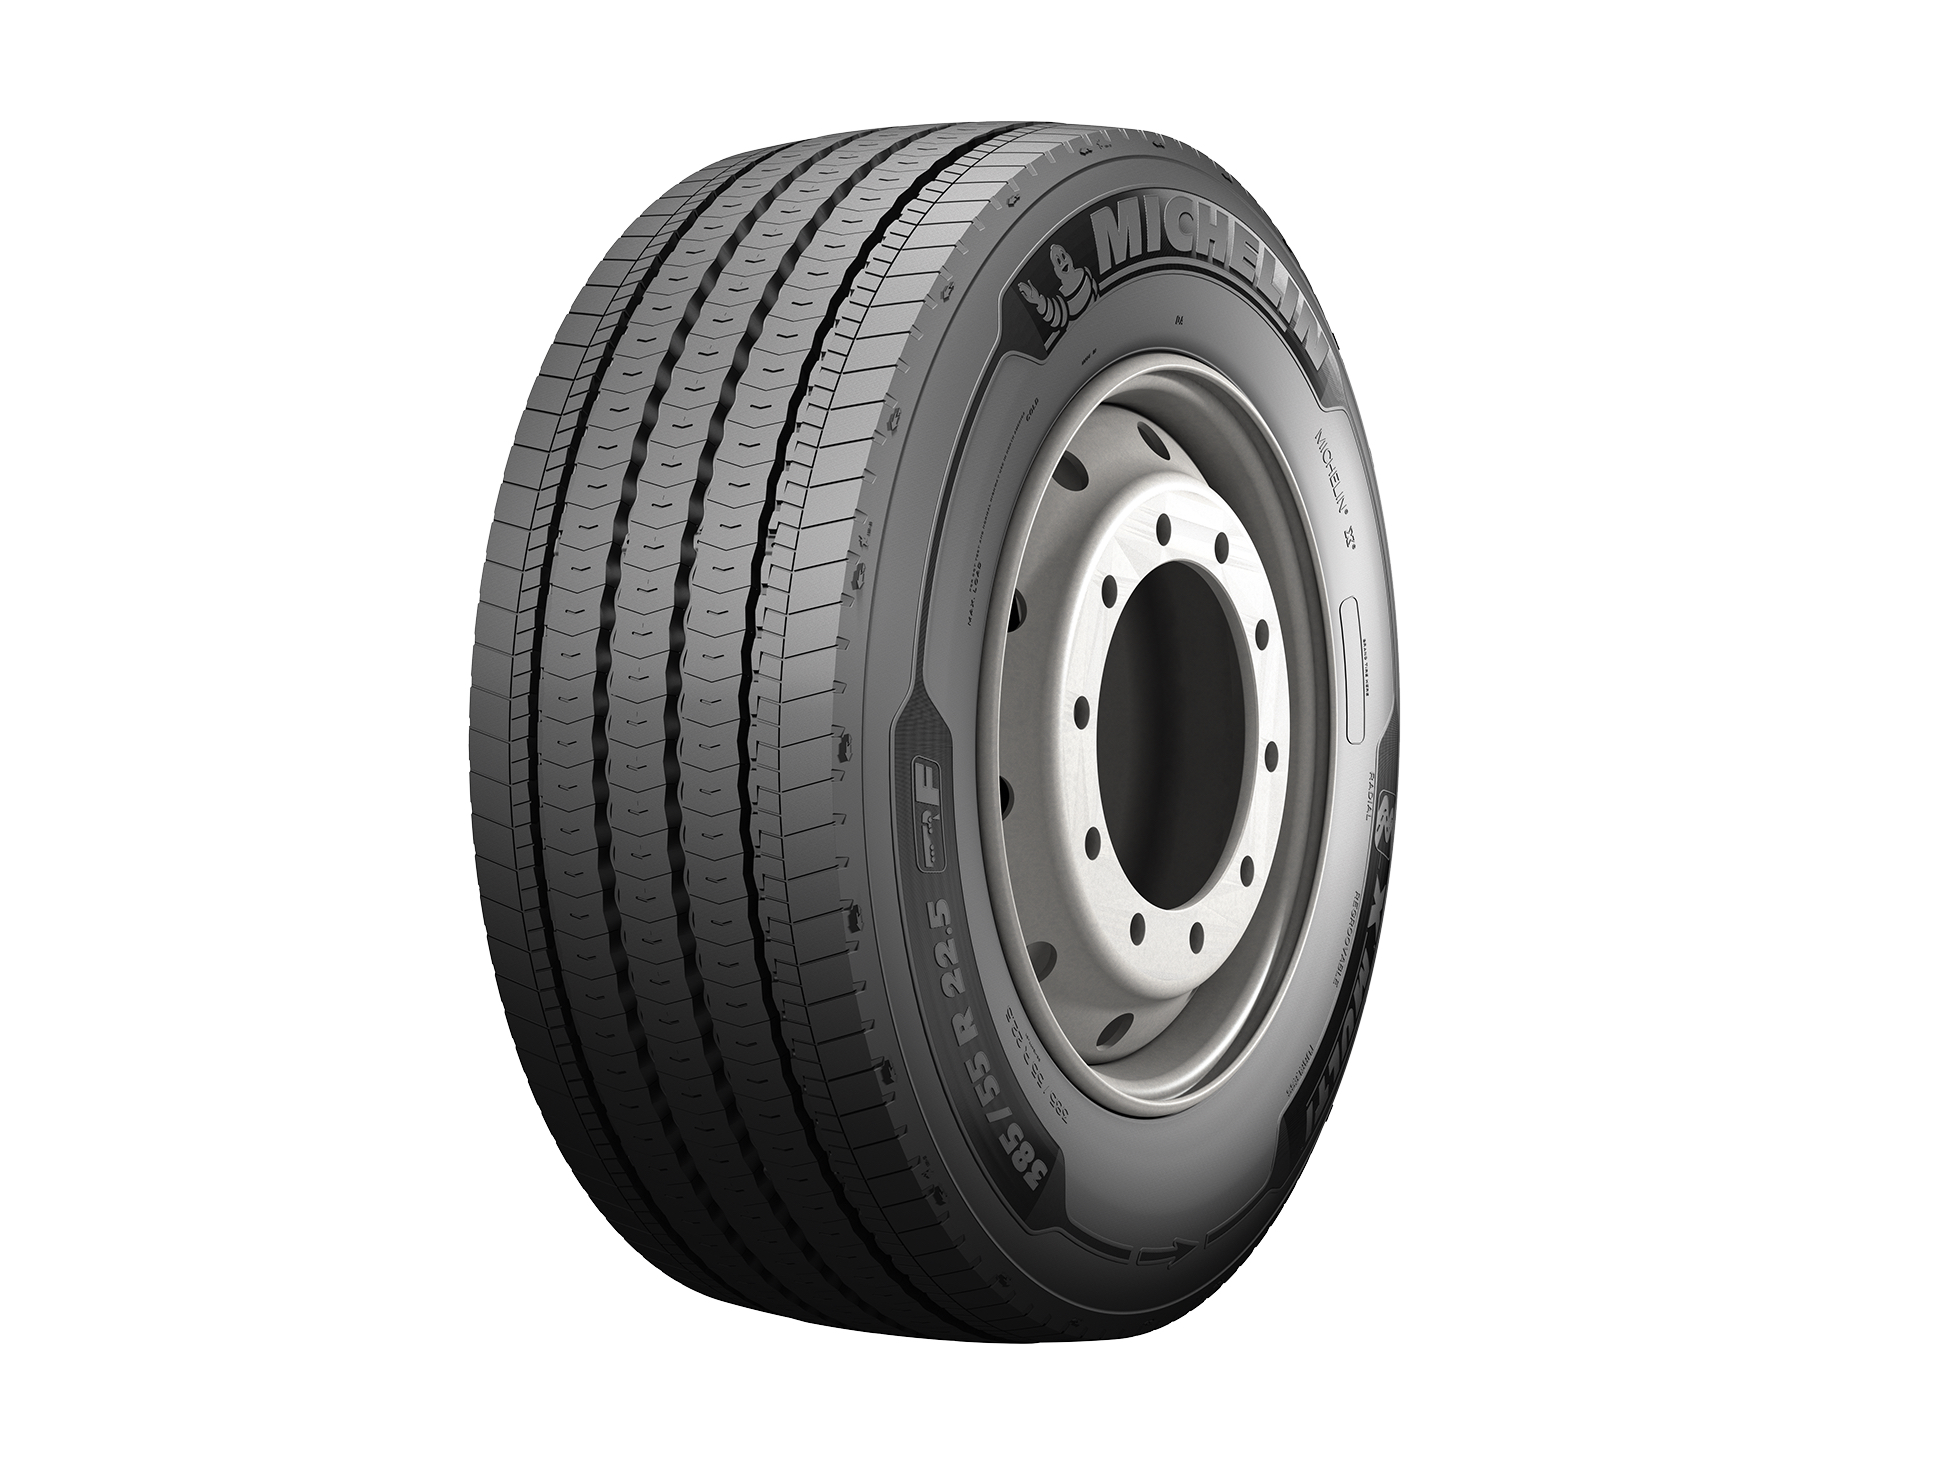 Michelin per l’ambiente: con i pneumatici multi vite aumenta la durata chilometrica